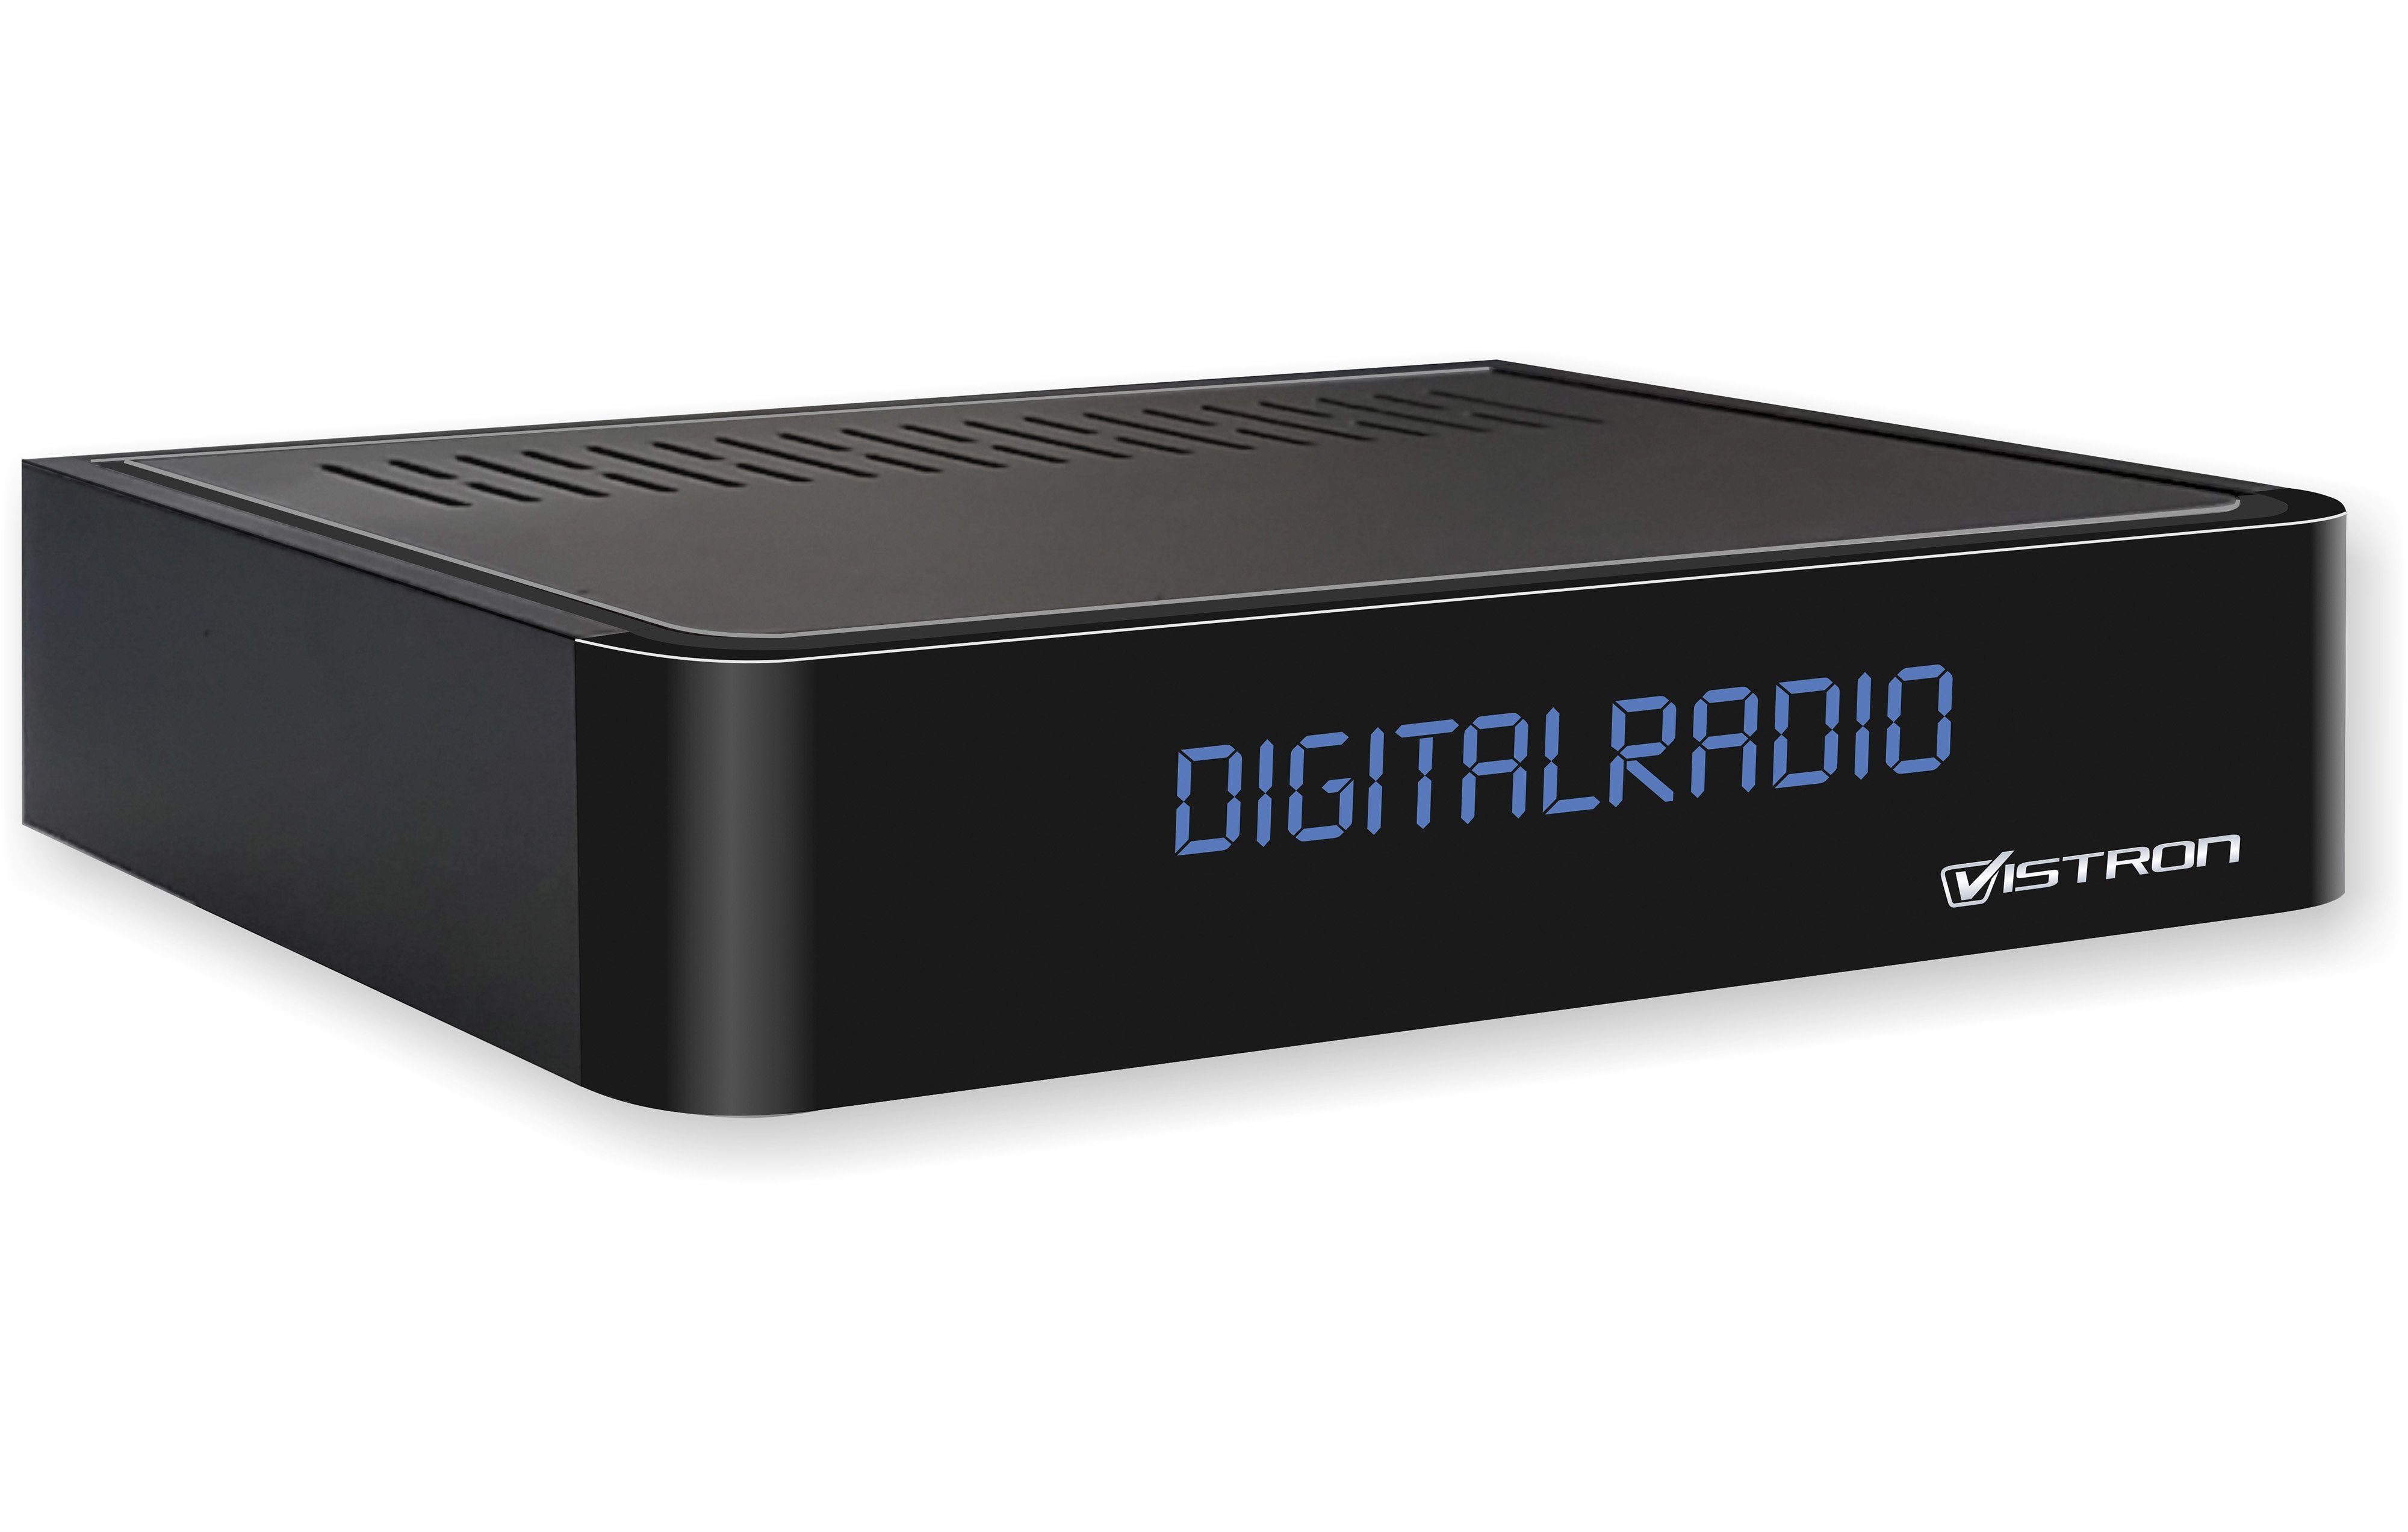 (für IN) VT855-N (DVB-C) Vistron Stereoanlagen, Kabelradio ANT Audio R/L, Toslink, Tuner